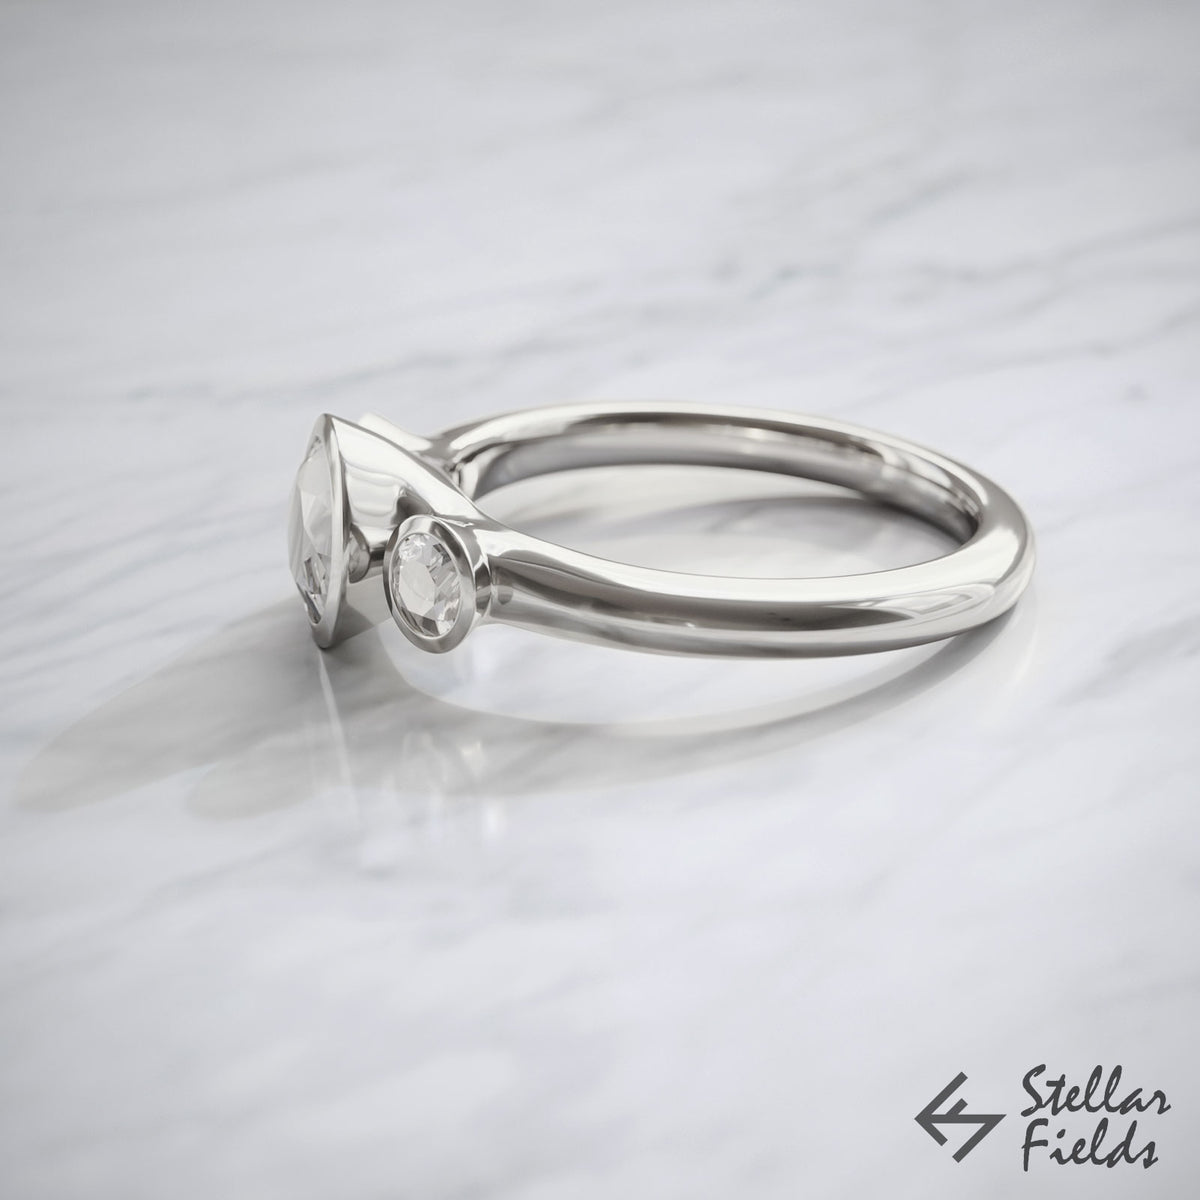 3 Stone Modern Bezel Ring Ethical GIA Diamonds Bezel Ring 14k White Gold Platinum Stellar Fields